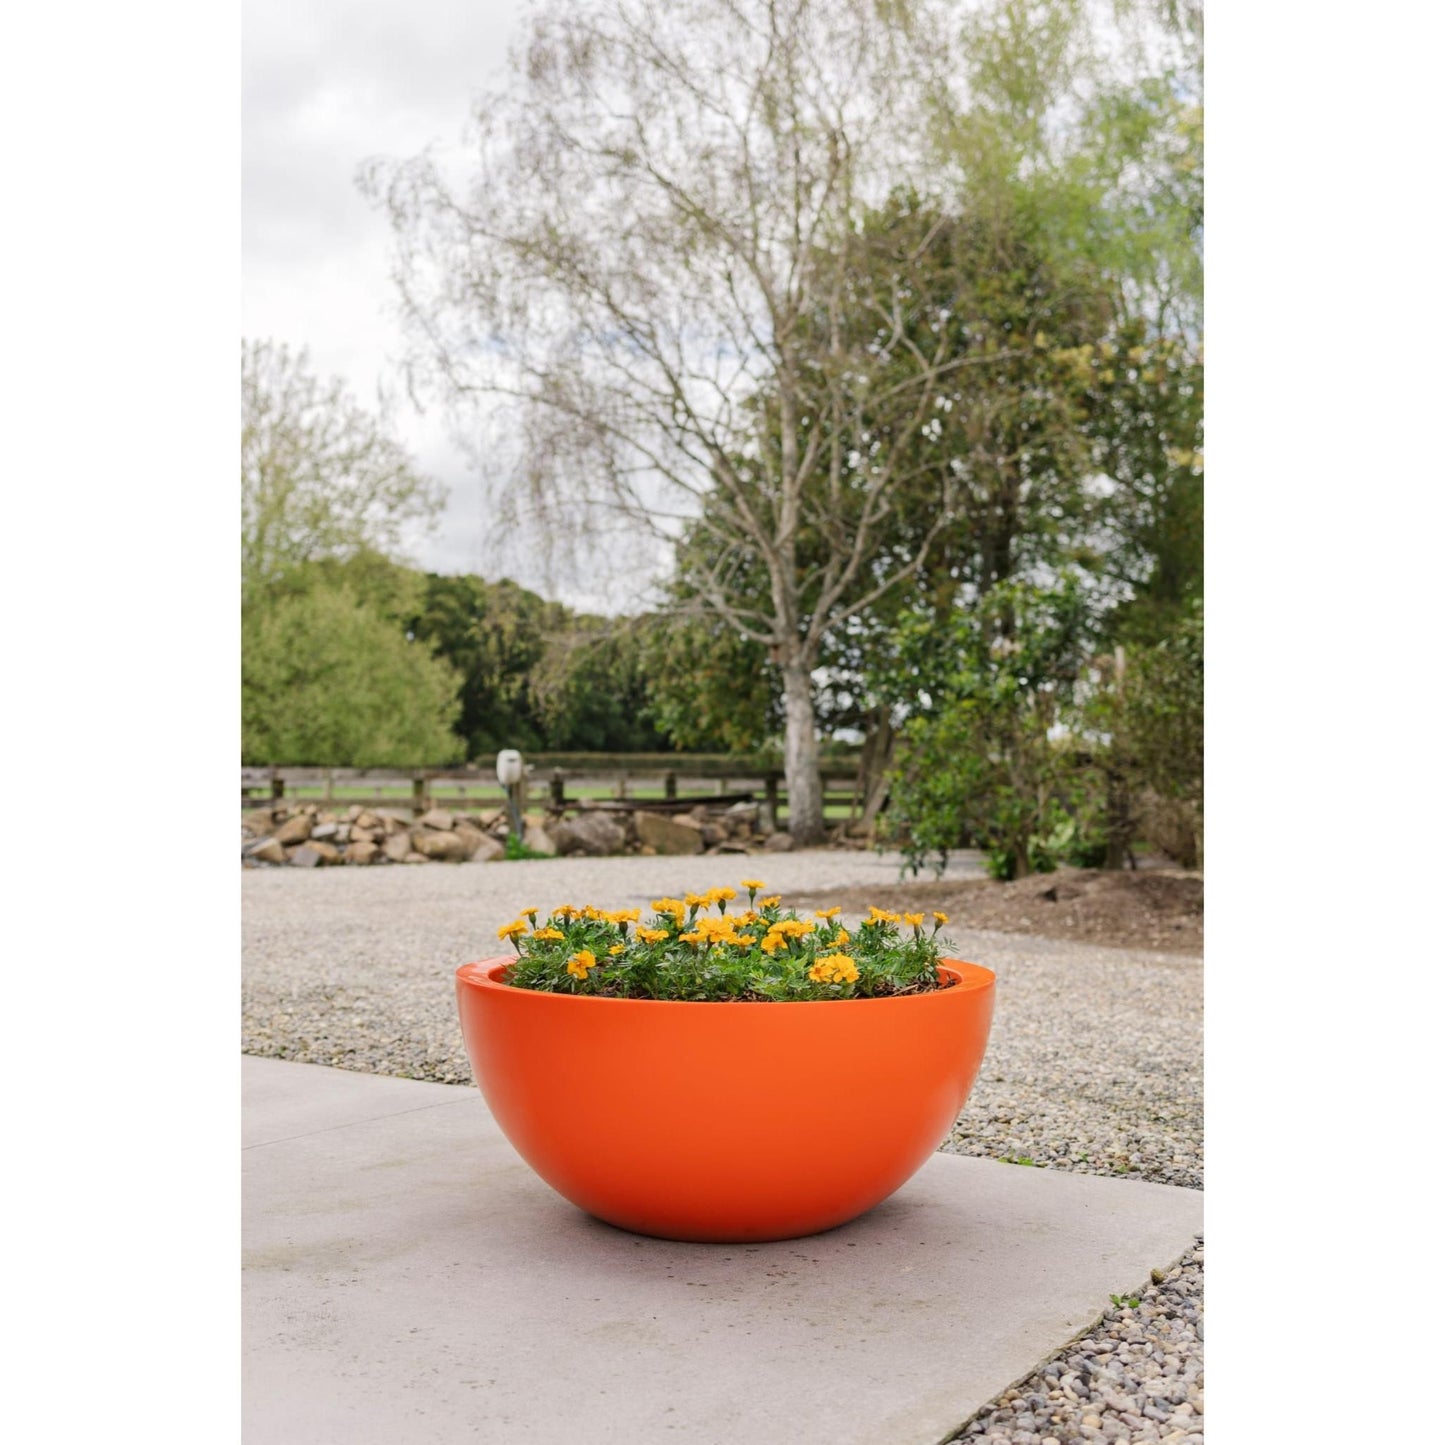 A large orange Modscene bowl planter pot on a concrete patio. The planter pot has Marigolds in it. 